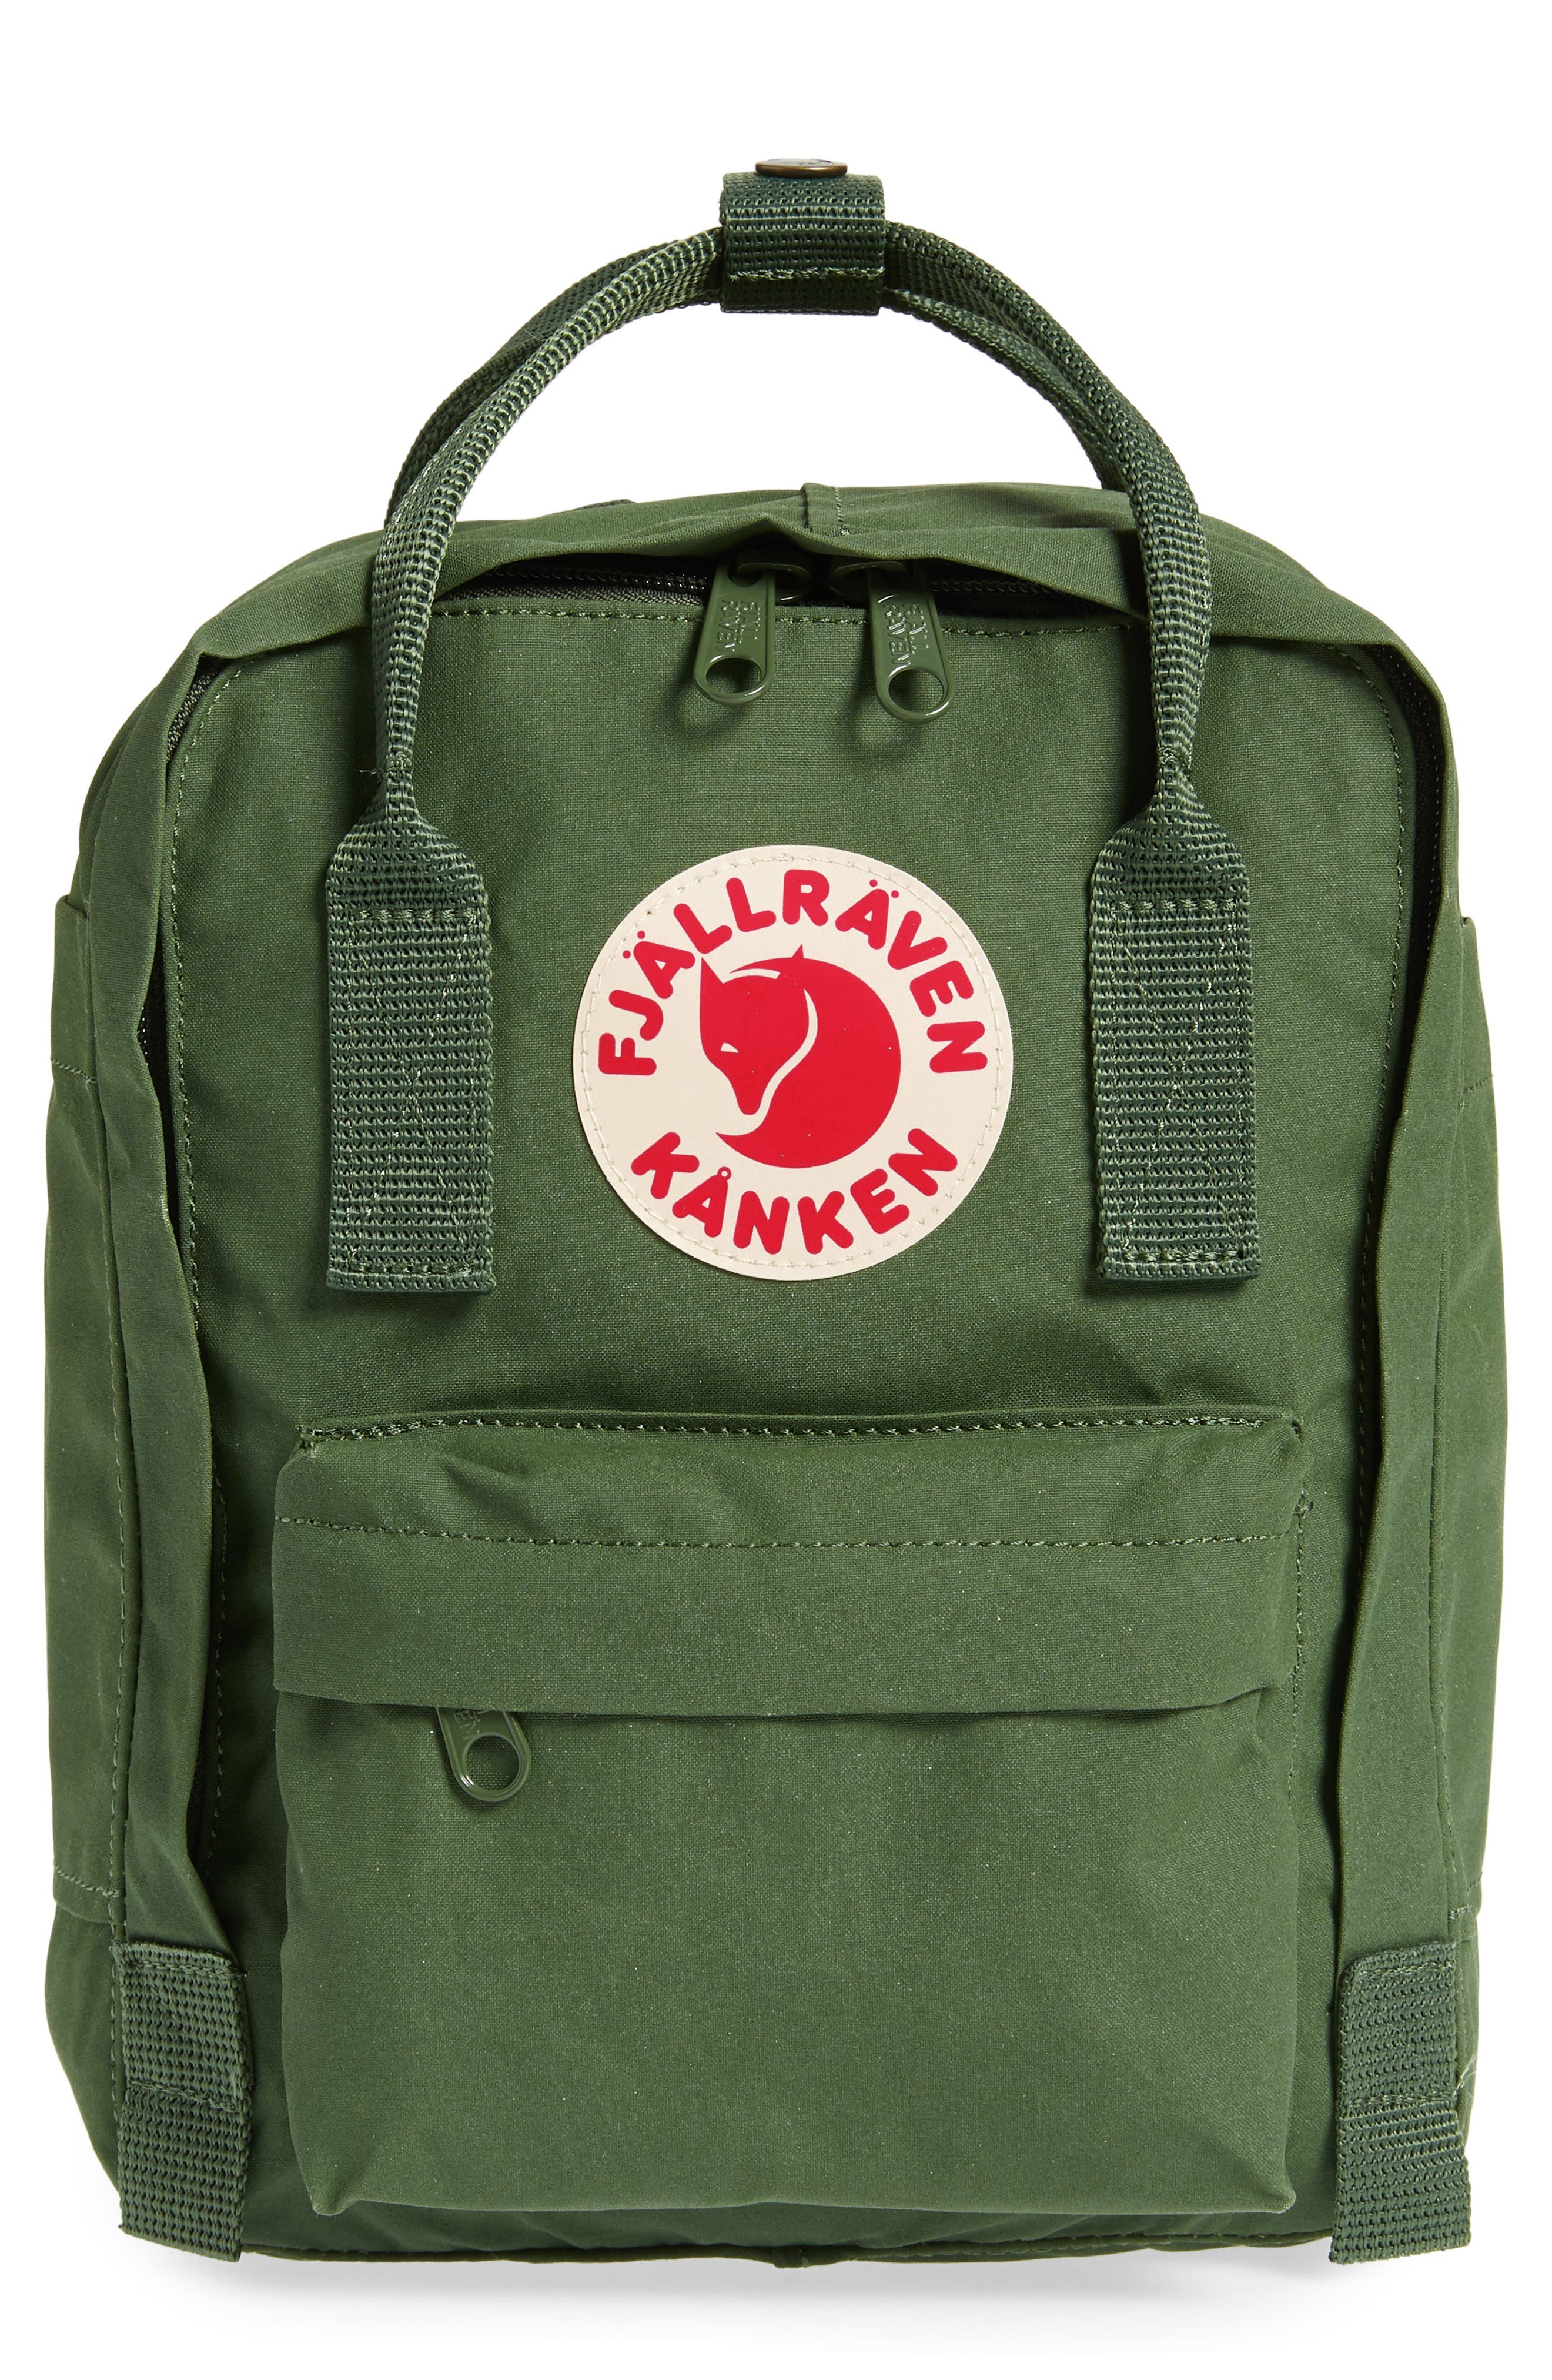 kanken backpack $40,psikohaber.org